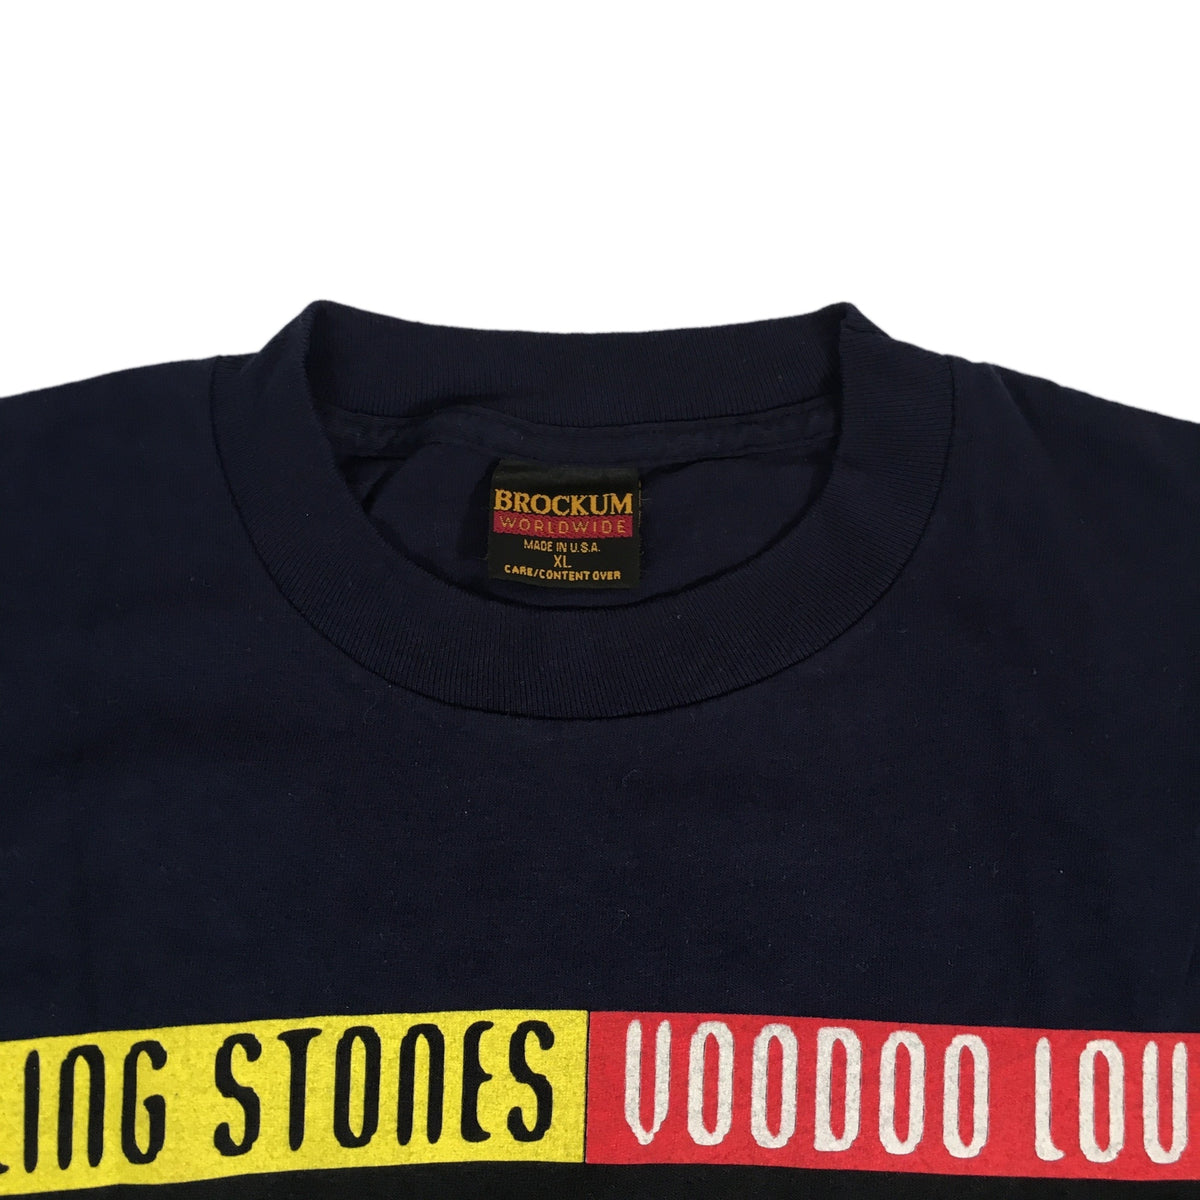 Vintage Rolling Stones &quot;Voodoo Lounge&quot; T-Shirt - jointcustodydc